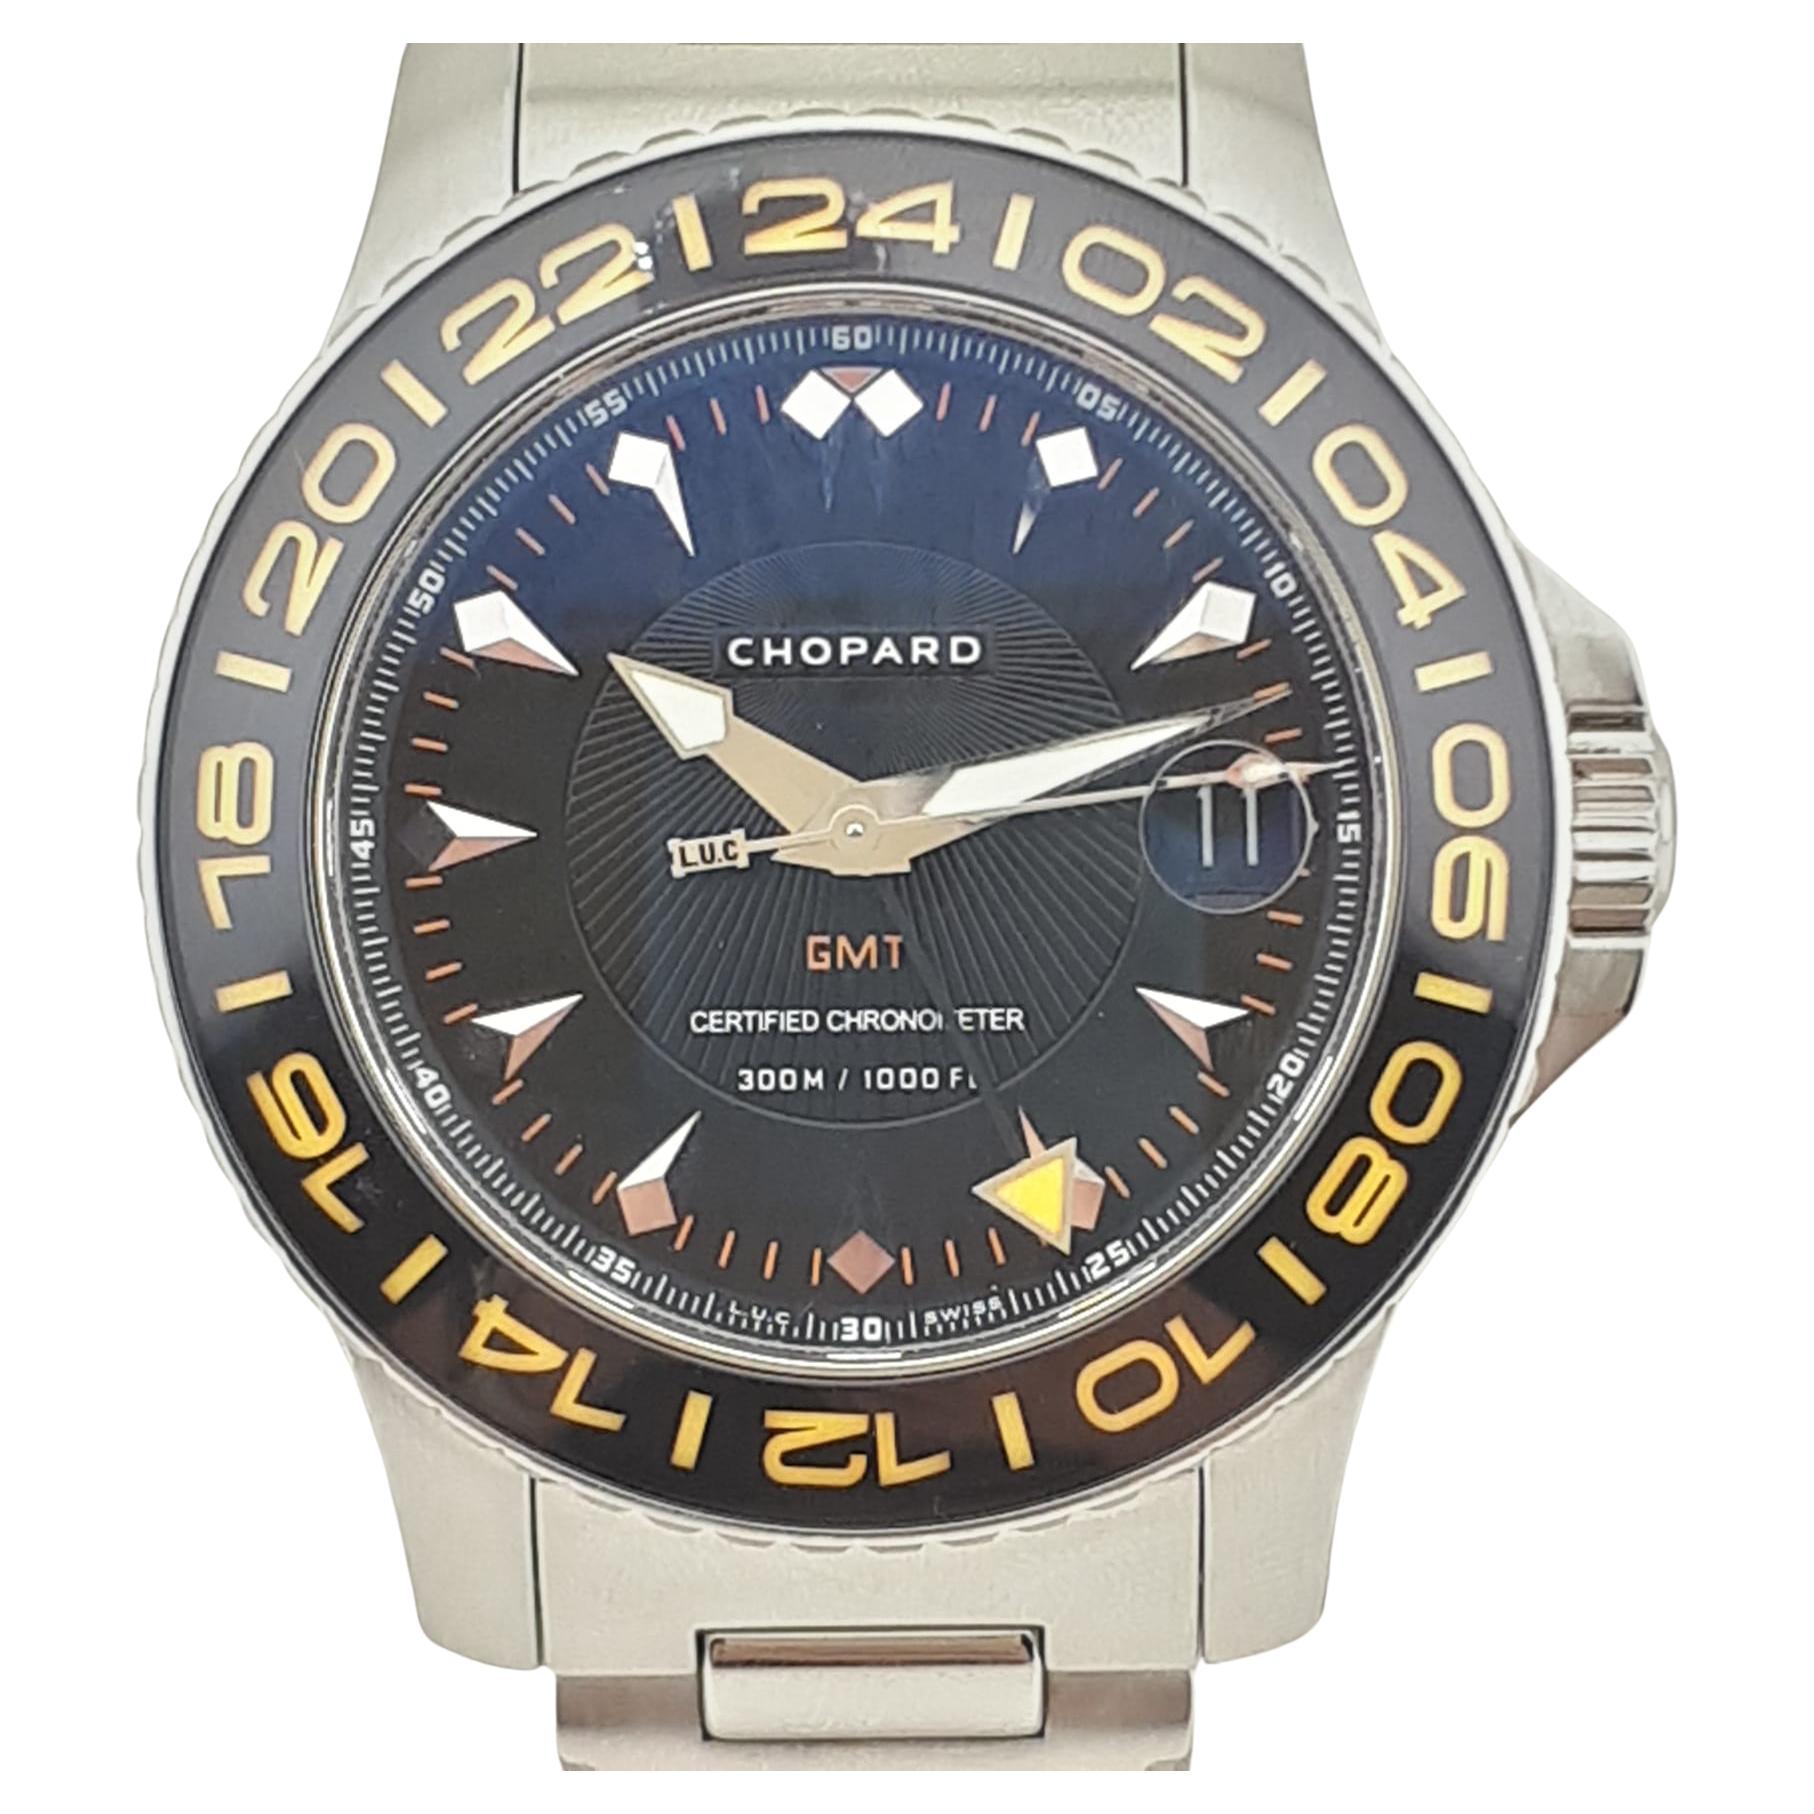 Chopard - L.U.C. Pro One GMT Diver - Ref: 16/8959 - Men For Sale